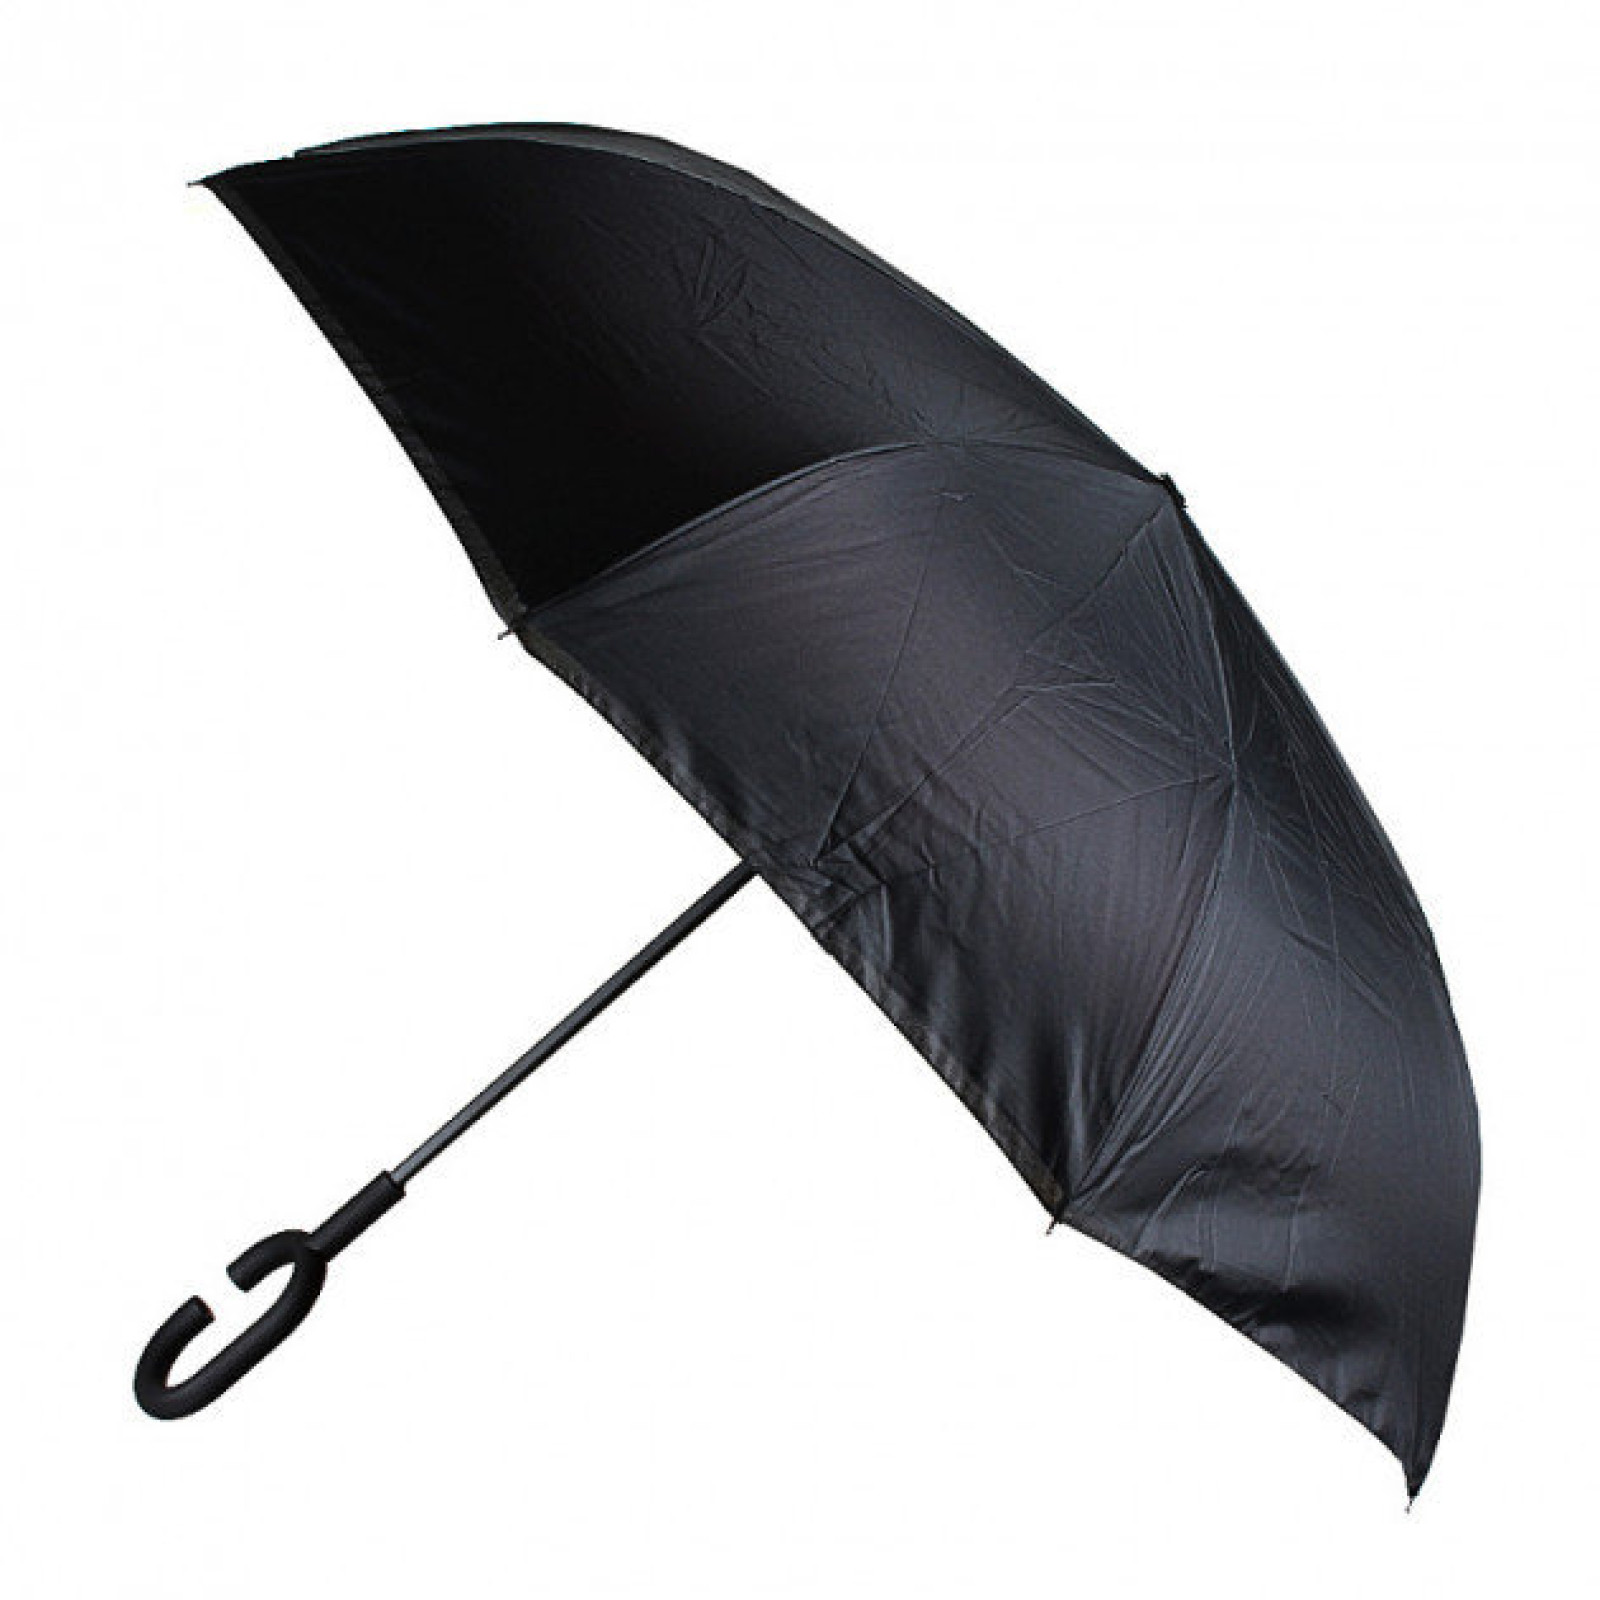 Зонт обратного сложения, антизонт, умный зонт, зонт наоборот Up Brella Черная Газета 154087